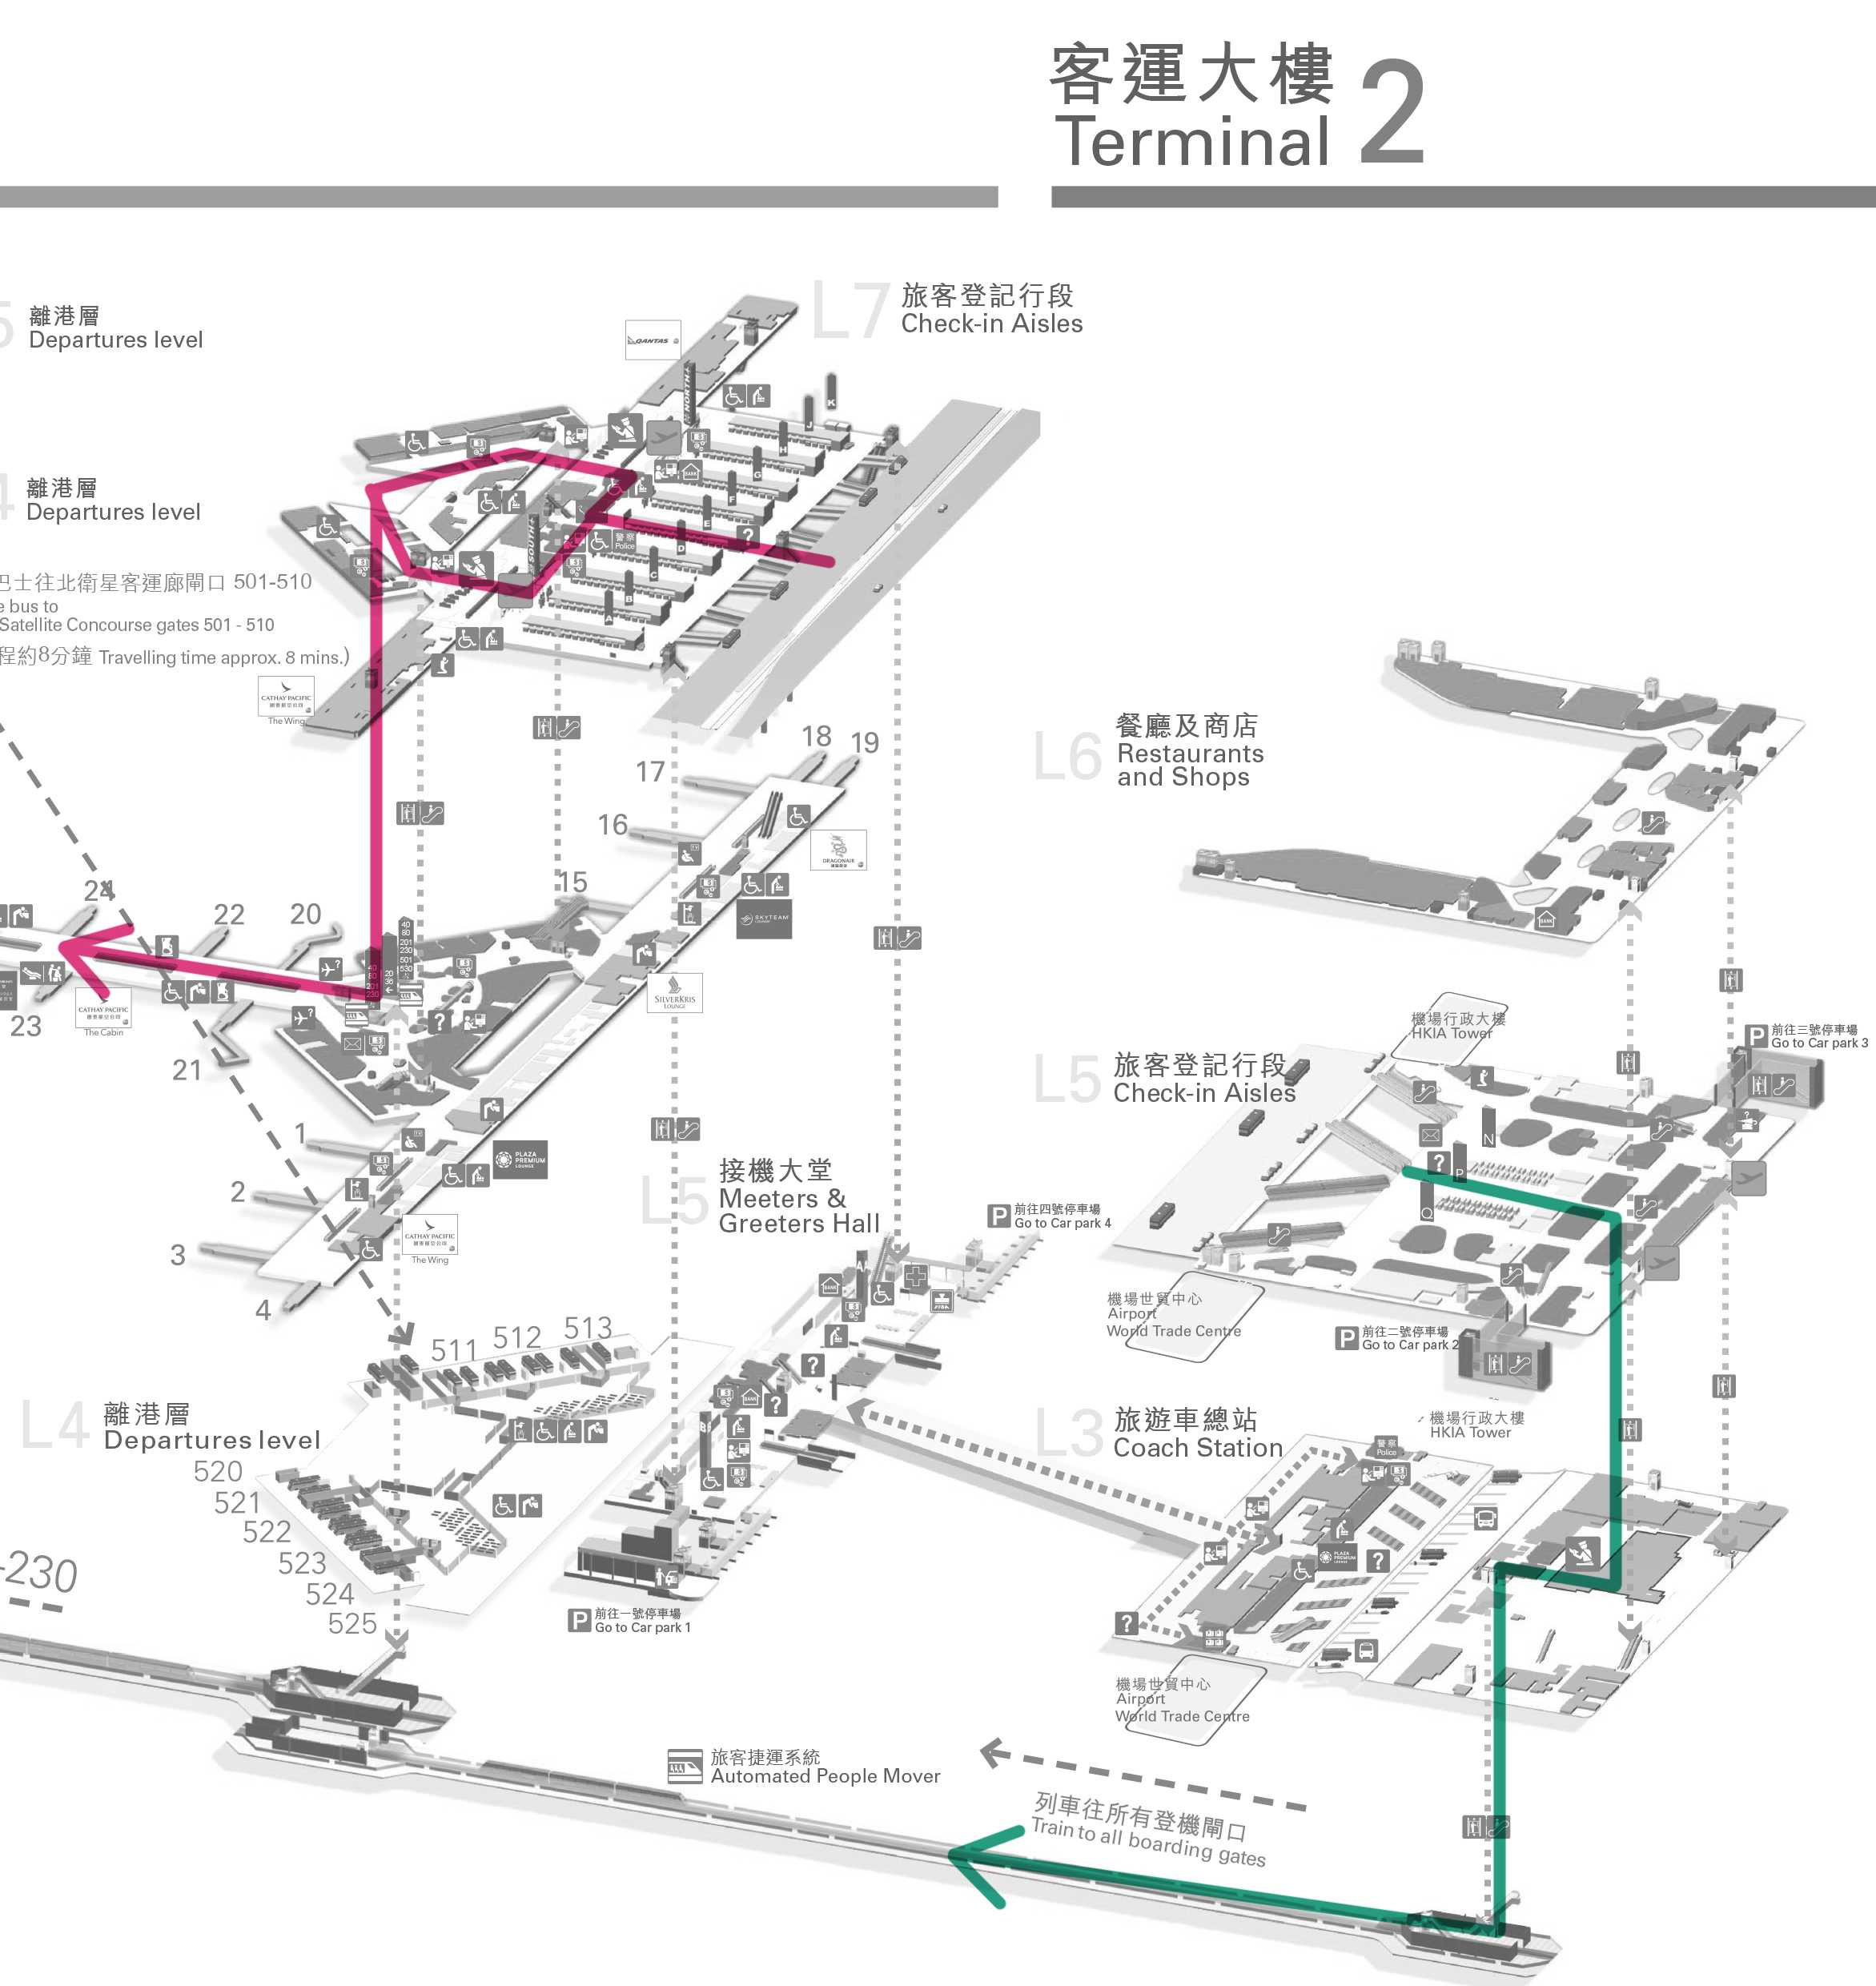 仁川第二航站楼启用 东北亚枢纽竞争激烈_民航资源网